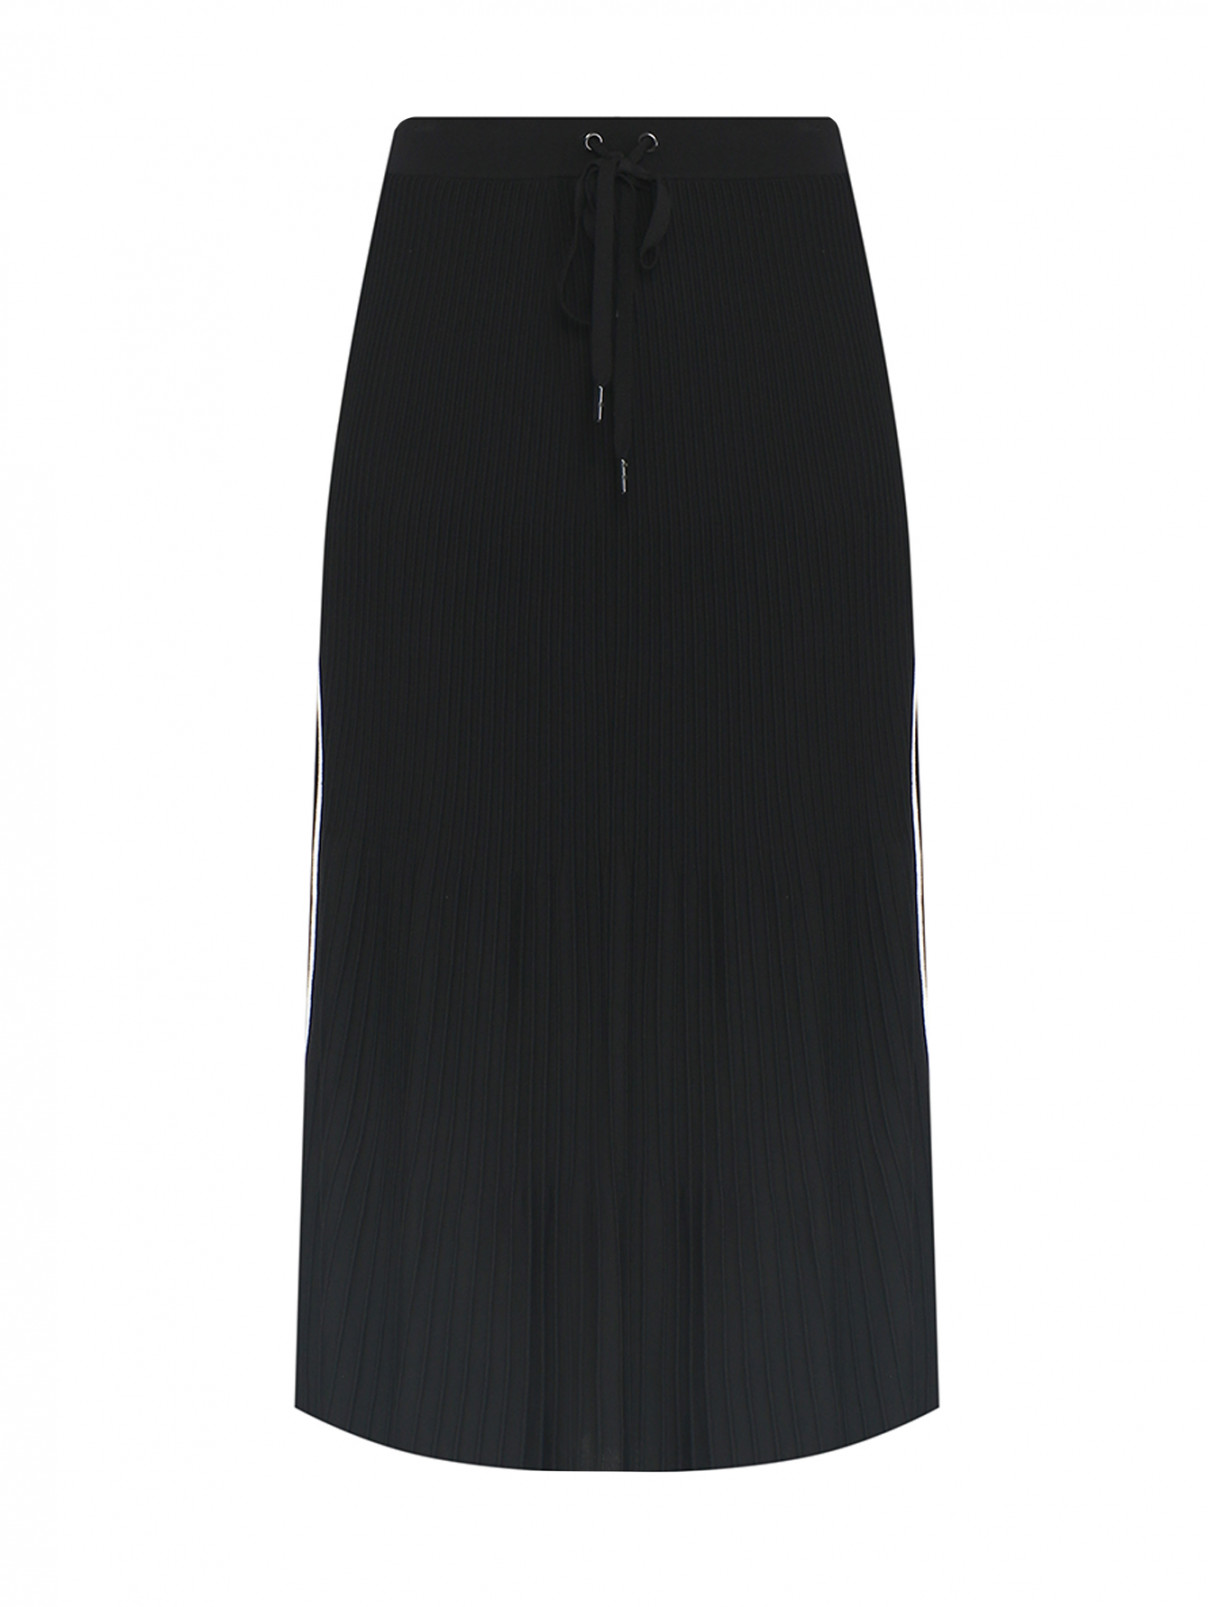 Плиссированная юбка на резинке Michael by MK  –  Общий вид  – Цвет:  Черный